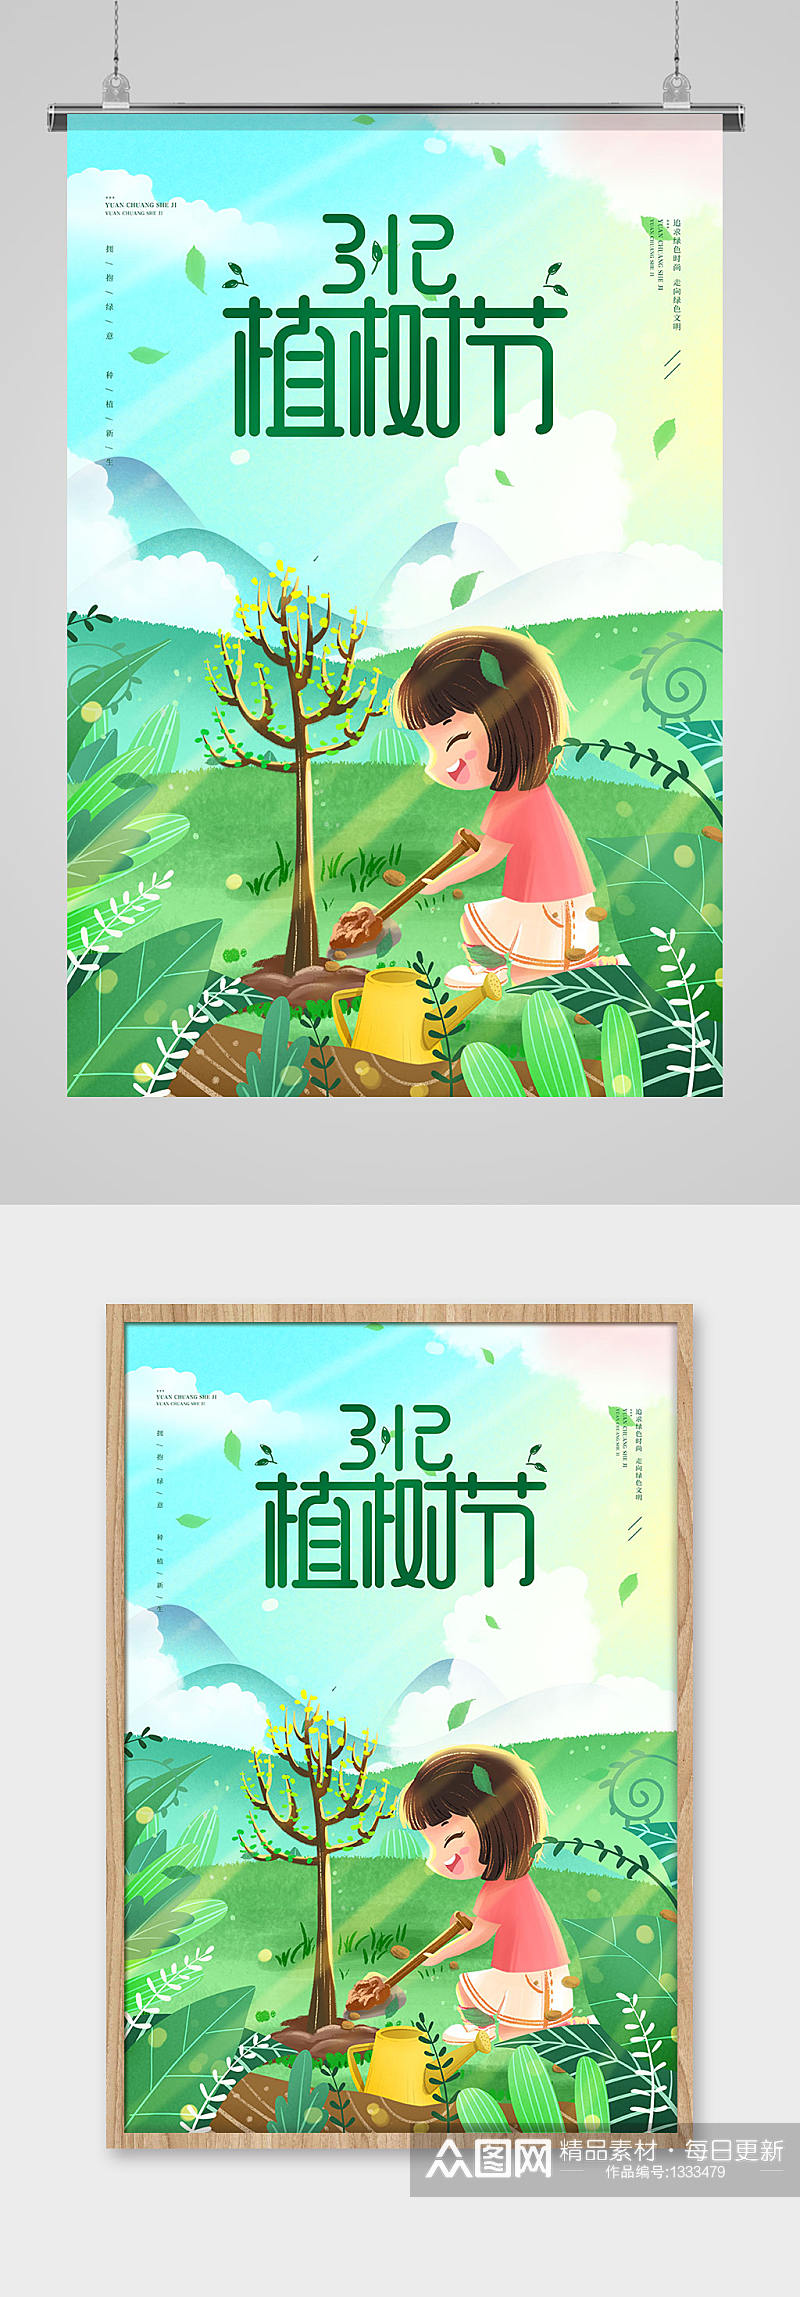 插画风3.12植树节公益宣传海报素材